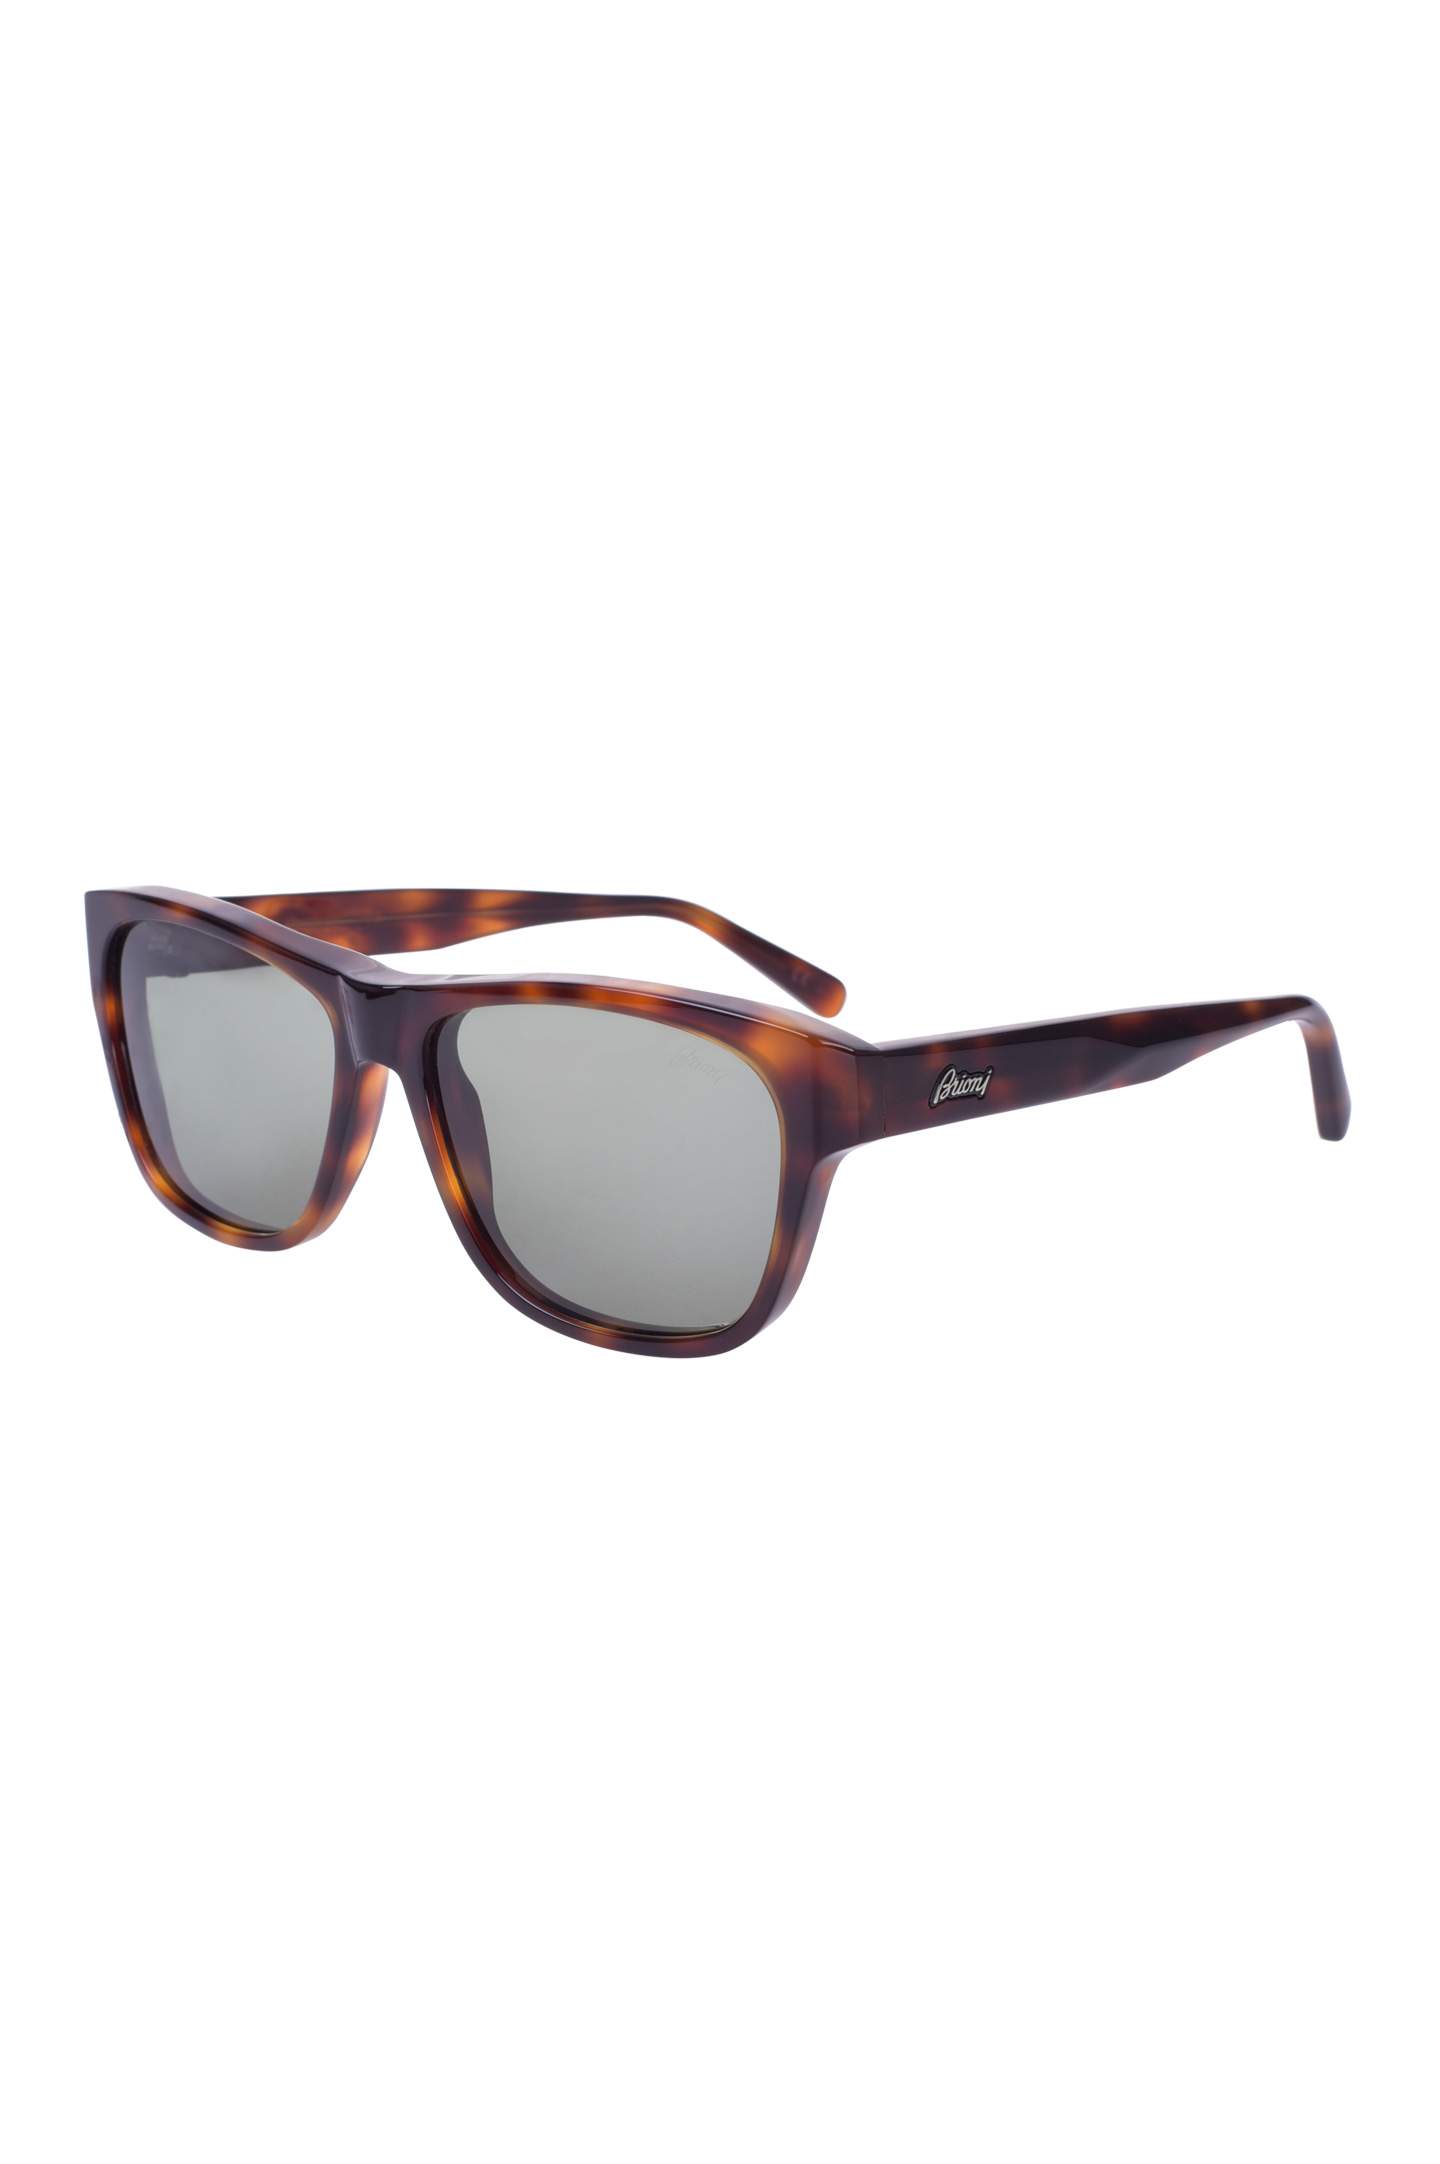 Солнцезащитные очки BRIONI ODC600 P3ZAC, цвет: Коричневый, Мужской